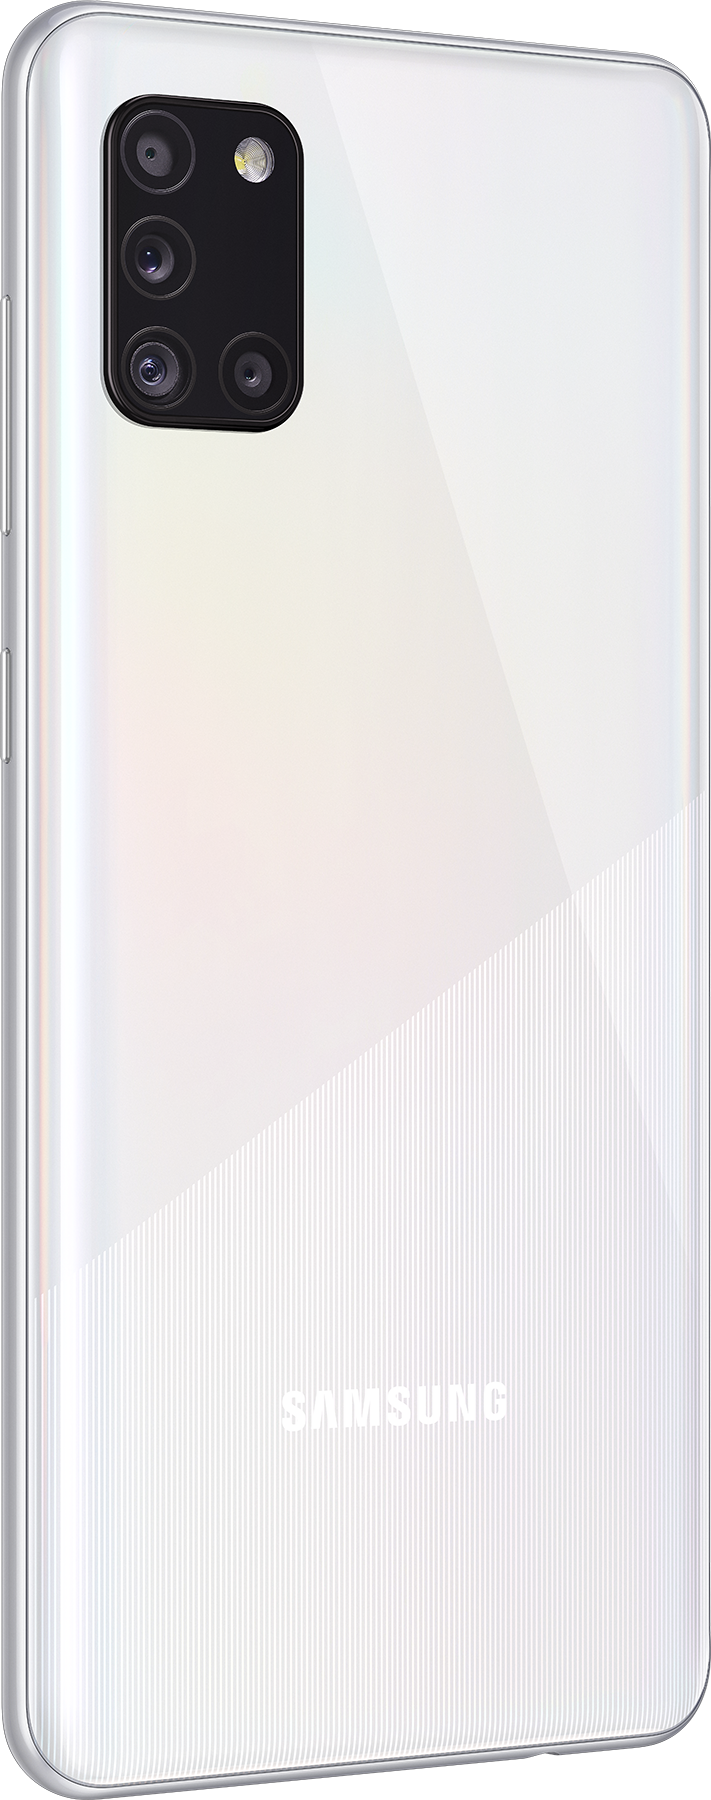 Samsung Galaxy A31 SM-A315F 64GB